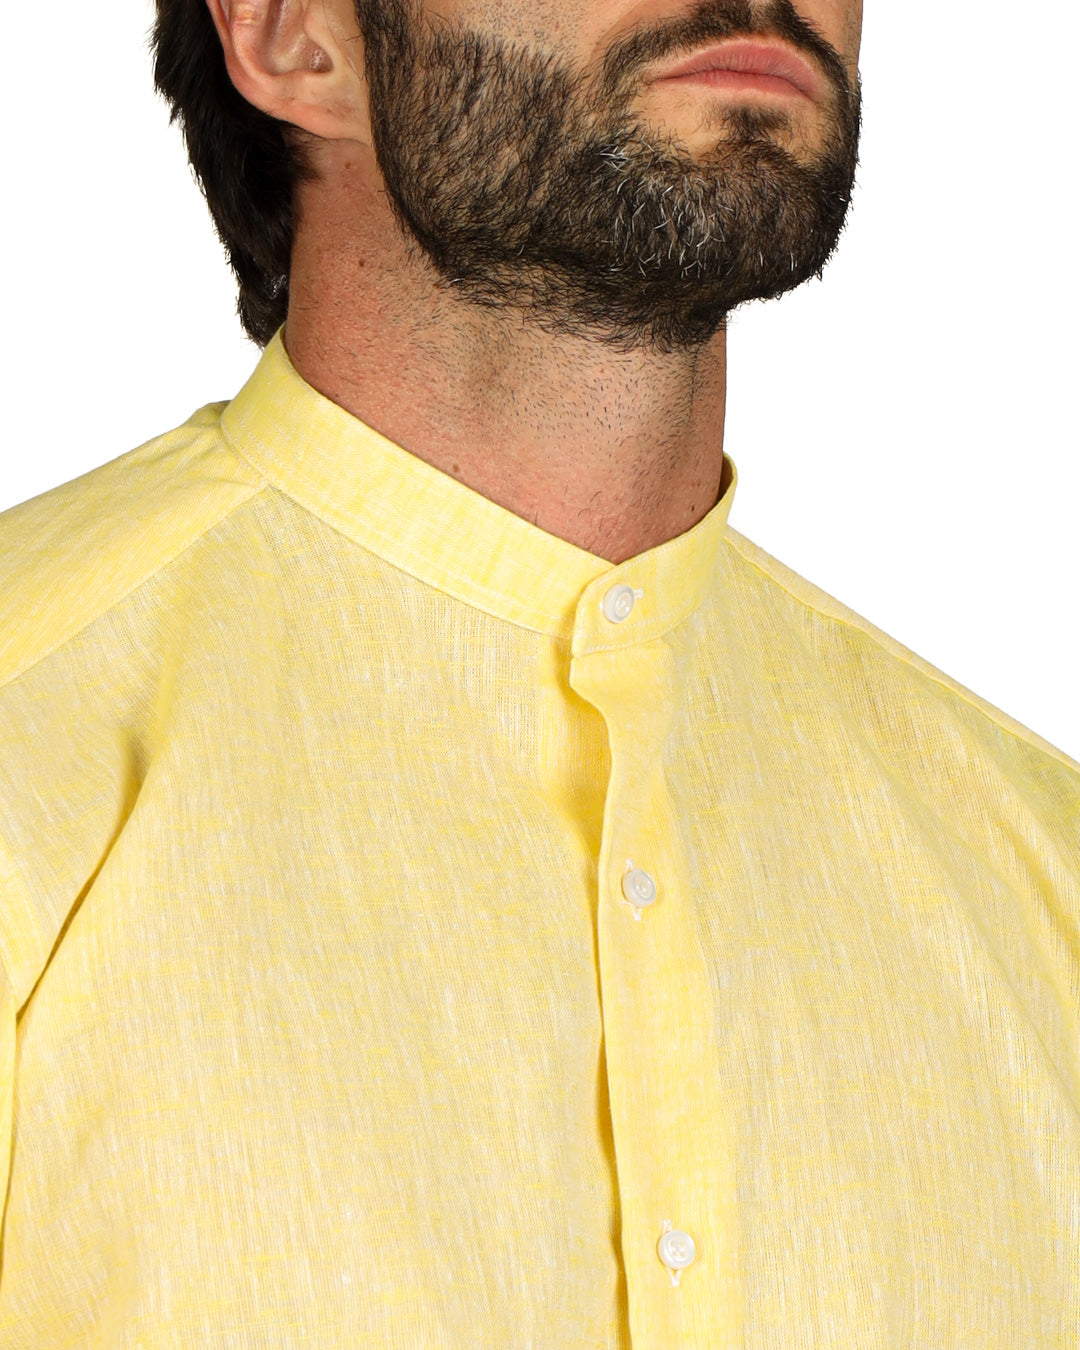 Positano - Camicia coreana gialla in lino